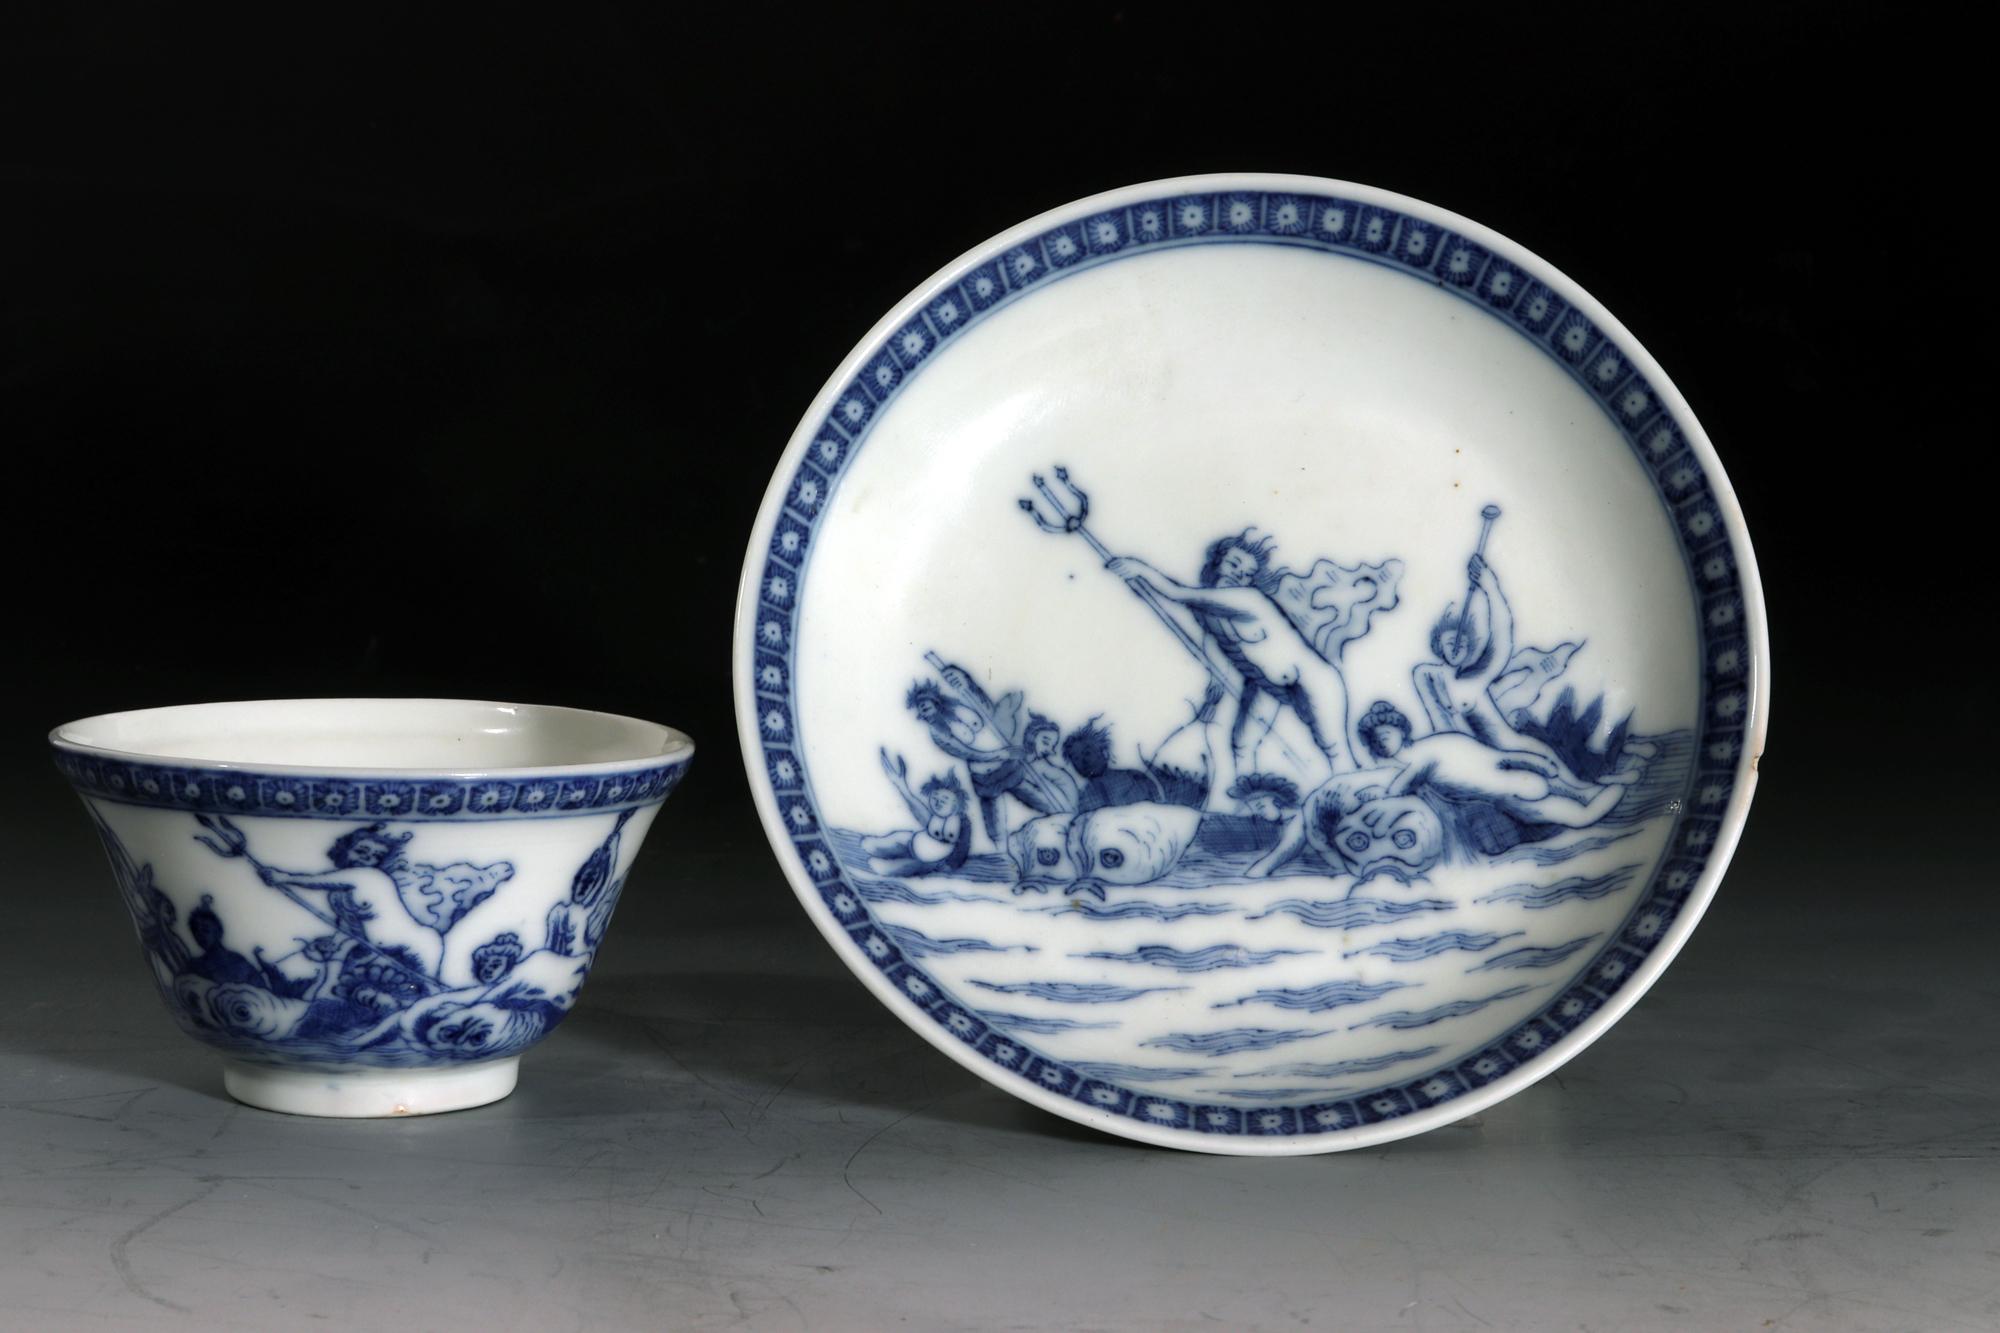 Bol et soucoupe à thé bleu et blanc en porcelaine d'exportation chinoise à sujet européen,
Neptune, le dieu de la mer,
Marché néerlandais,
Période Yongzheng,
Circa 1730-35

Cette porcelaine d'exportation chinoise, probablement fabriquée pour